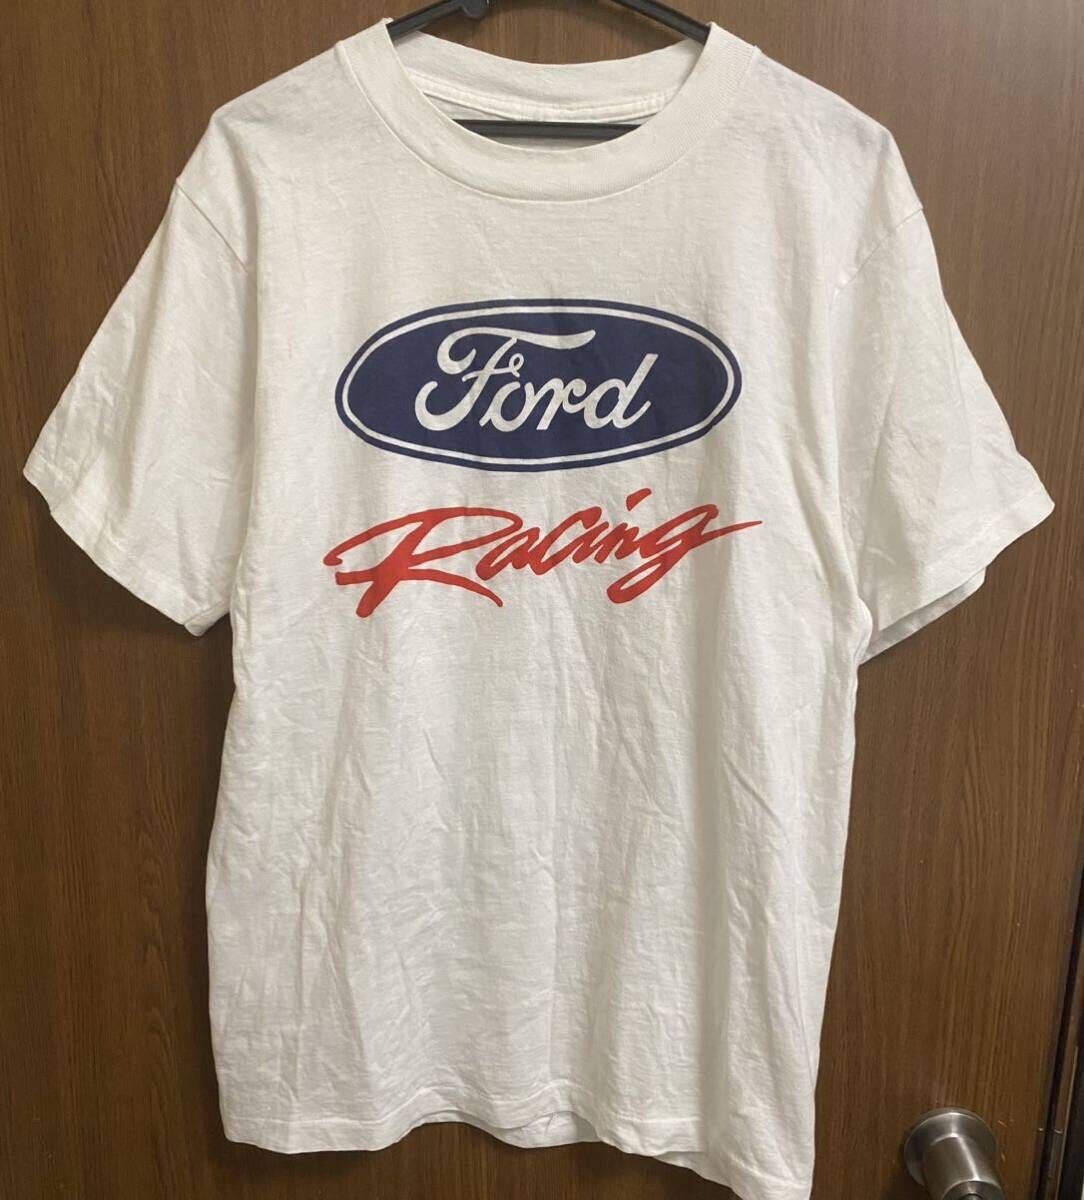 レア 90s Ford Racing ビンテージ Tシャツ 古着 vintage 企業 NASCAR F-1 motor spors / apple sony fuct harley davidson_画像1